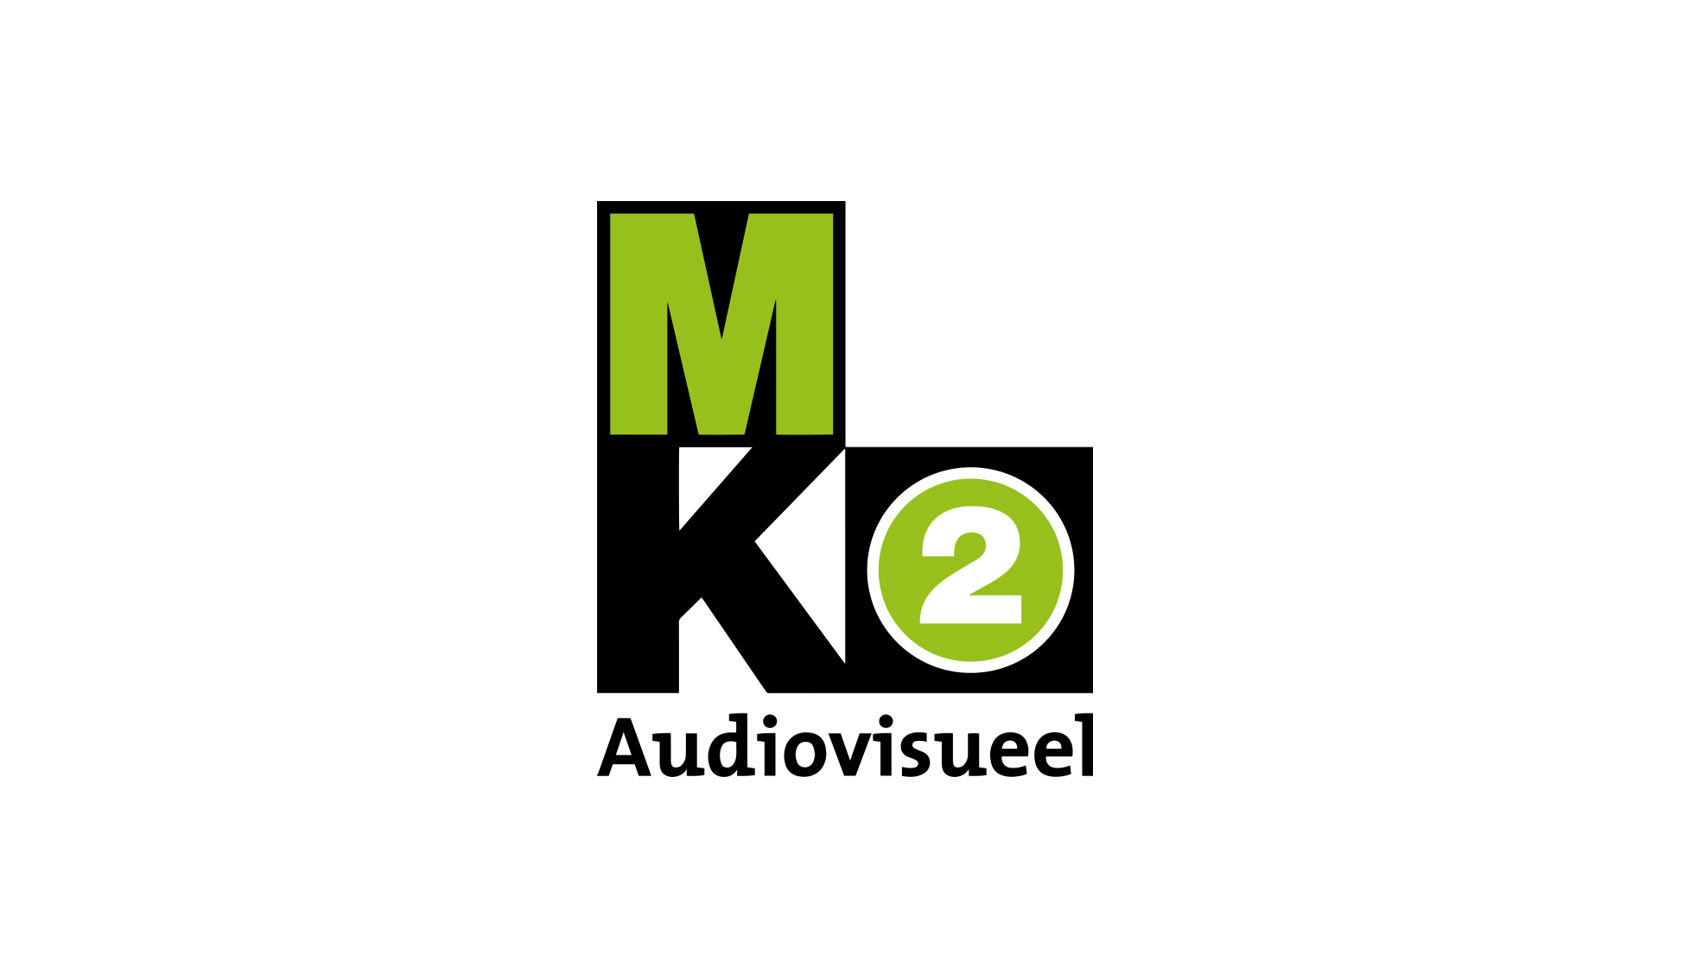 MK2 Audiovisueel